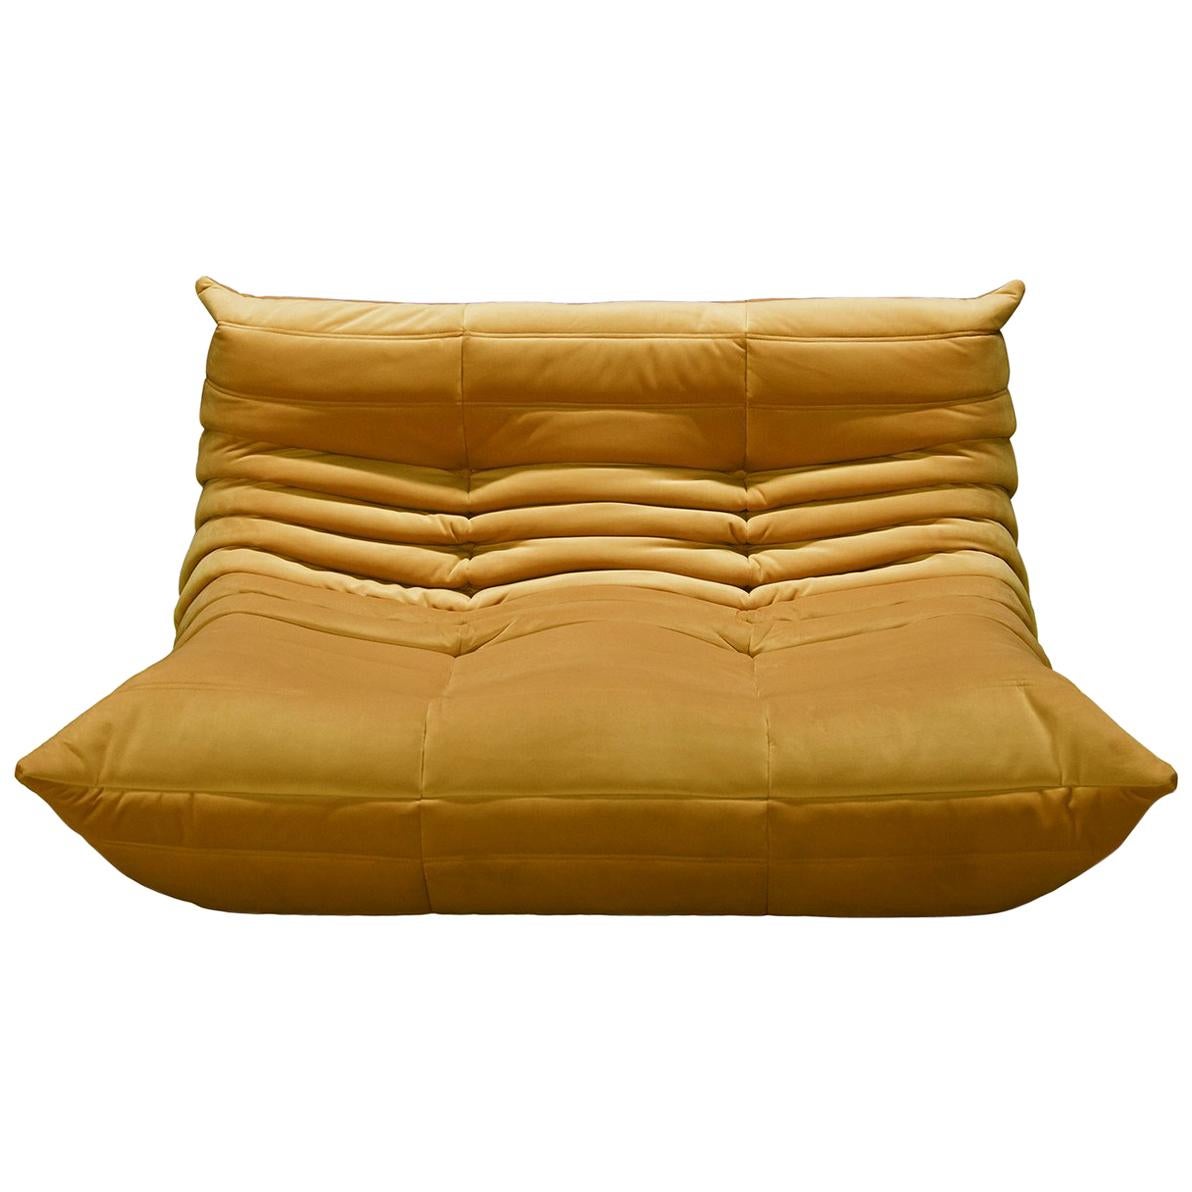 Togo 2-Seat Sofa in Golden Yellow Velvet by Michel Ducaroy for Ligne Roset For Sale